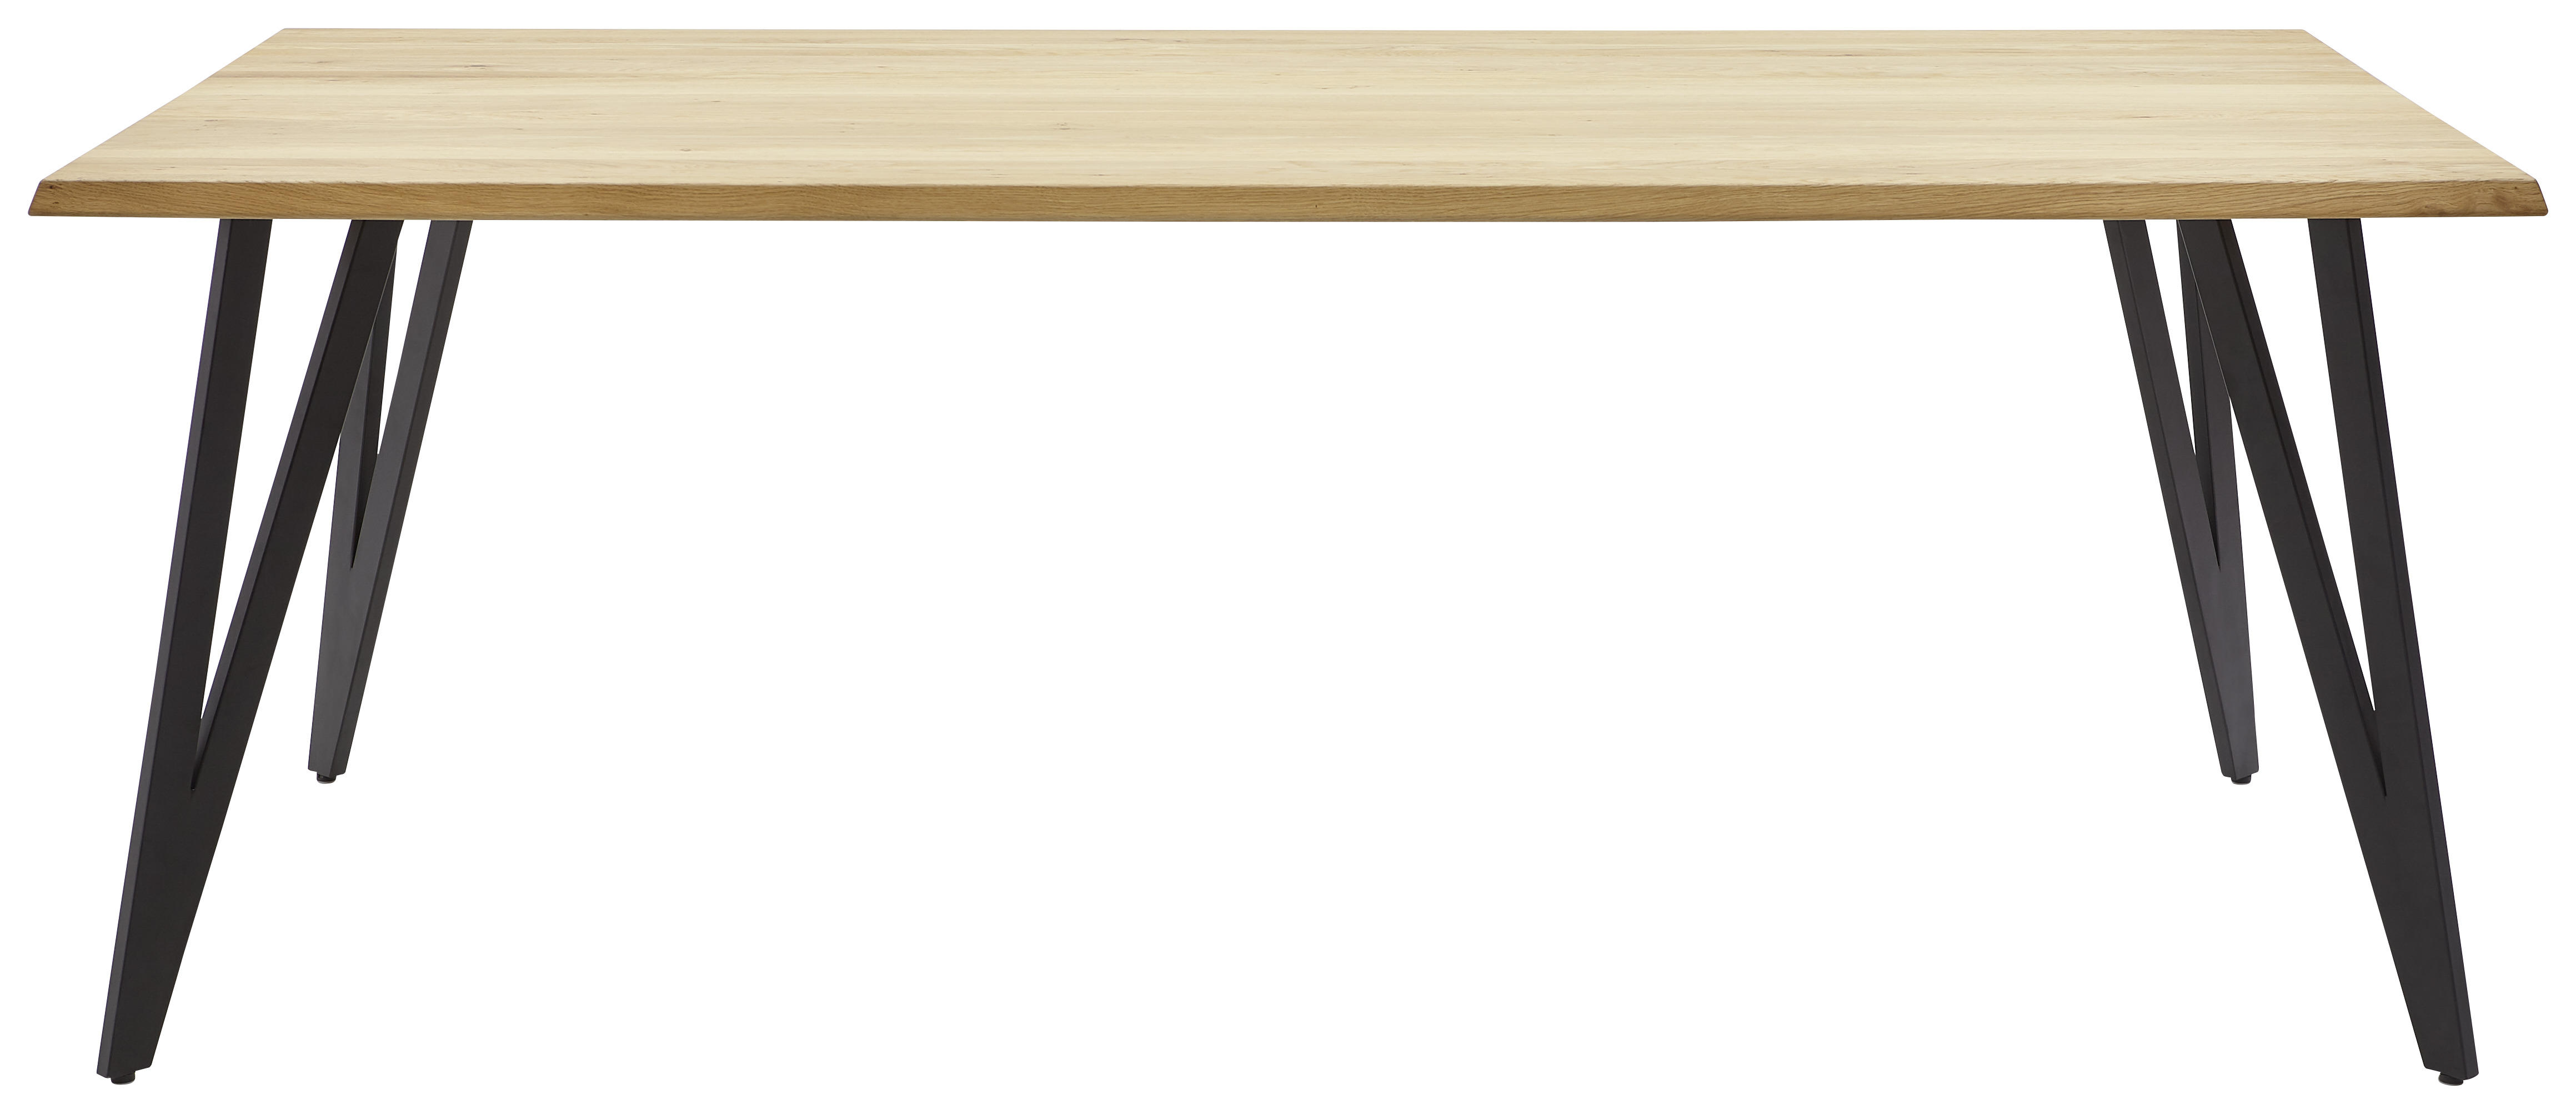 ESSTISCH 220/100/76 cm Wildeiche massiv Holz, Metall Schwarz, Eichefarben rechteckig  - Eichefarben/Schwarz, Design, Holz/Metall (220/100/76cm) - Valnatura